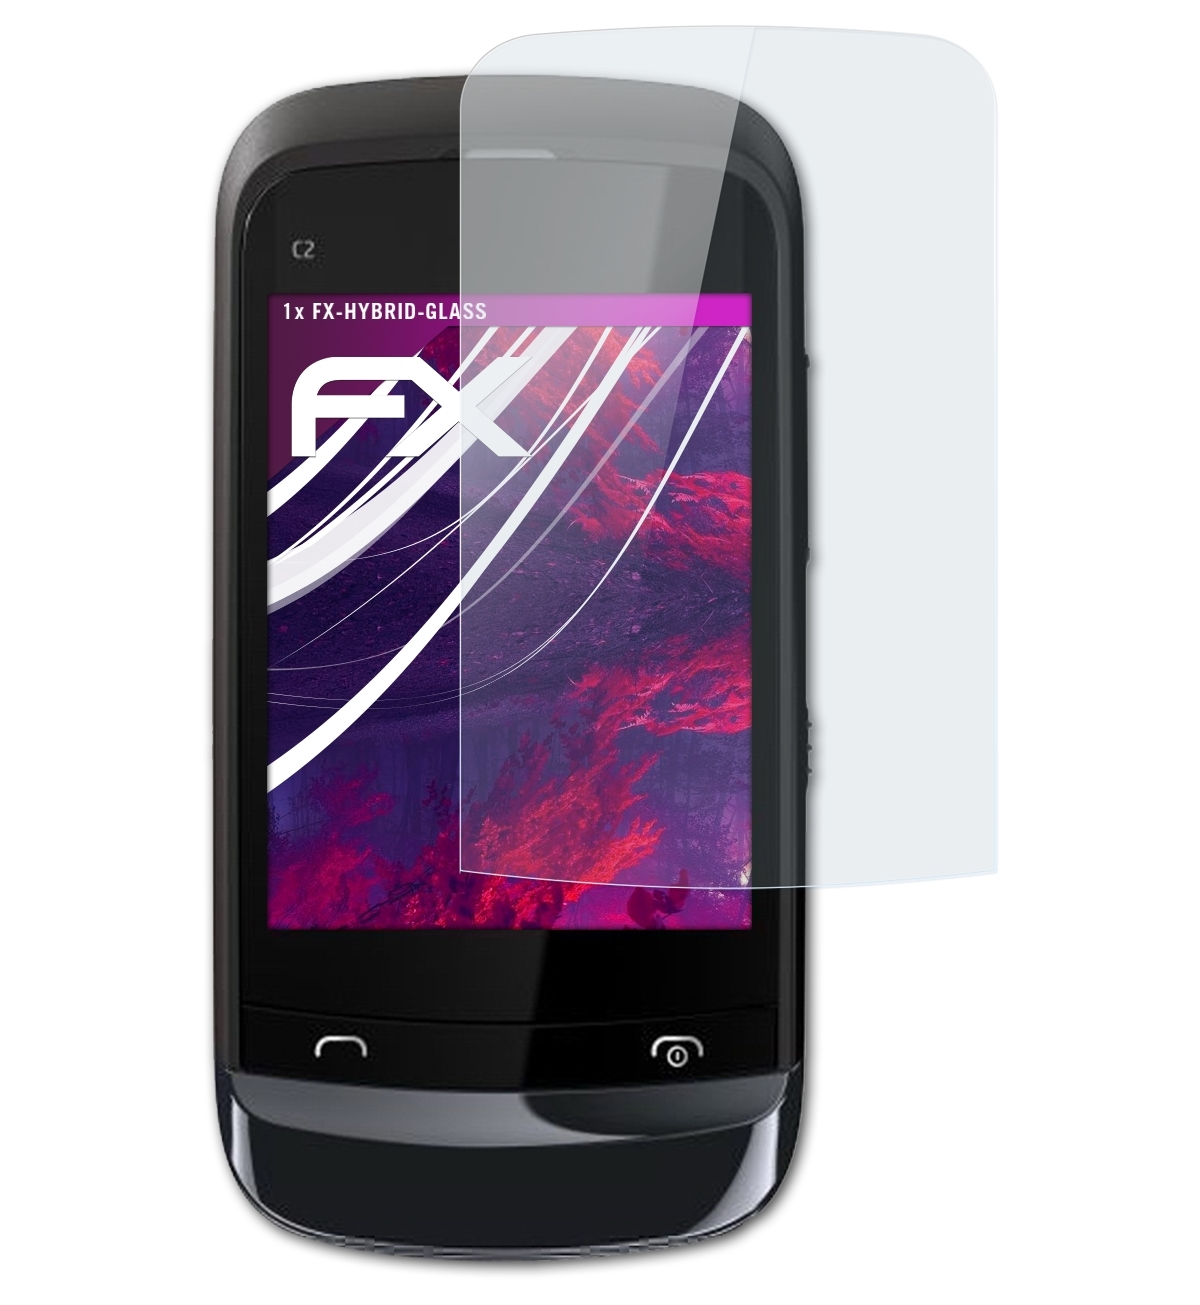 ATFOLIX FX-Hybrid-Glass Schutzglas(für C2-02) Nokia